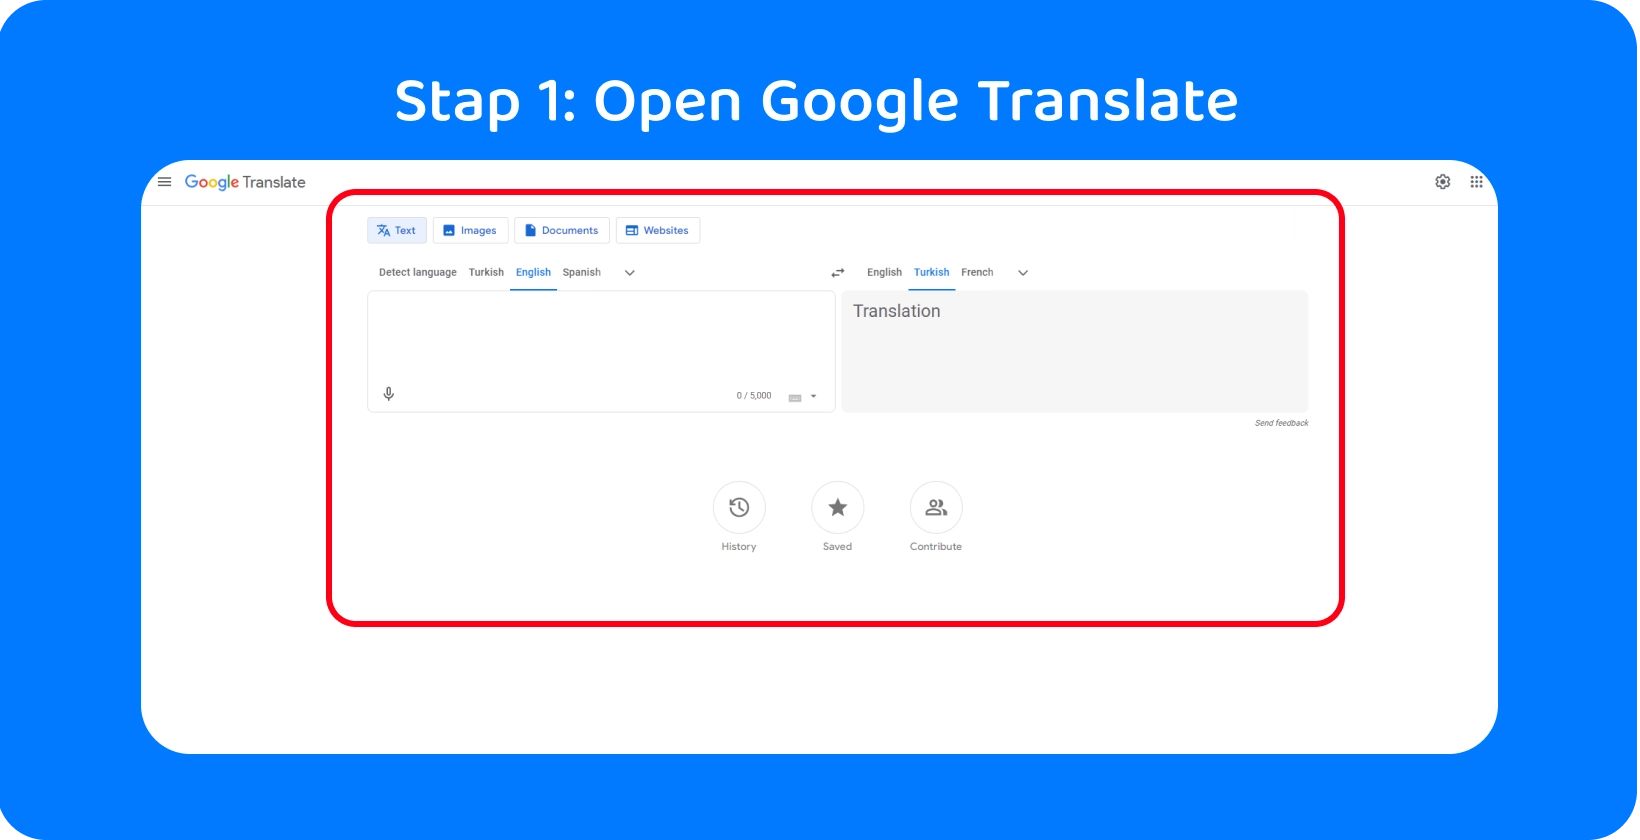 Google Translate-interface klaar om gesproken woorden om te zetten in tekst, ter illustratie van stap 1 in het proces.